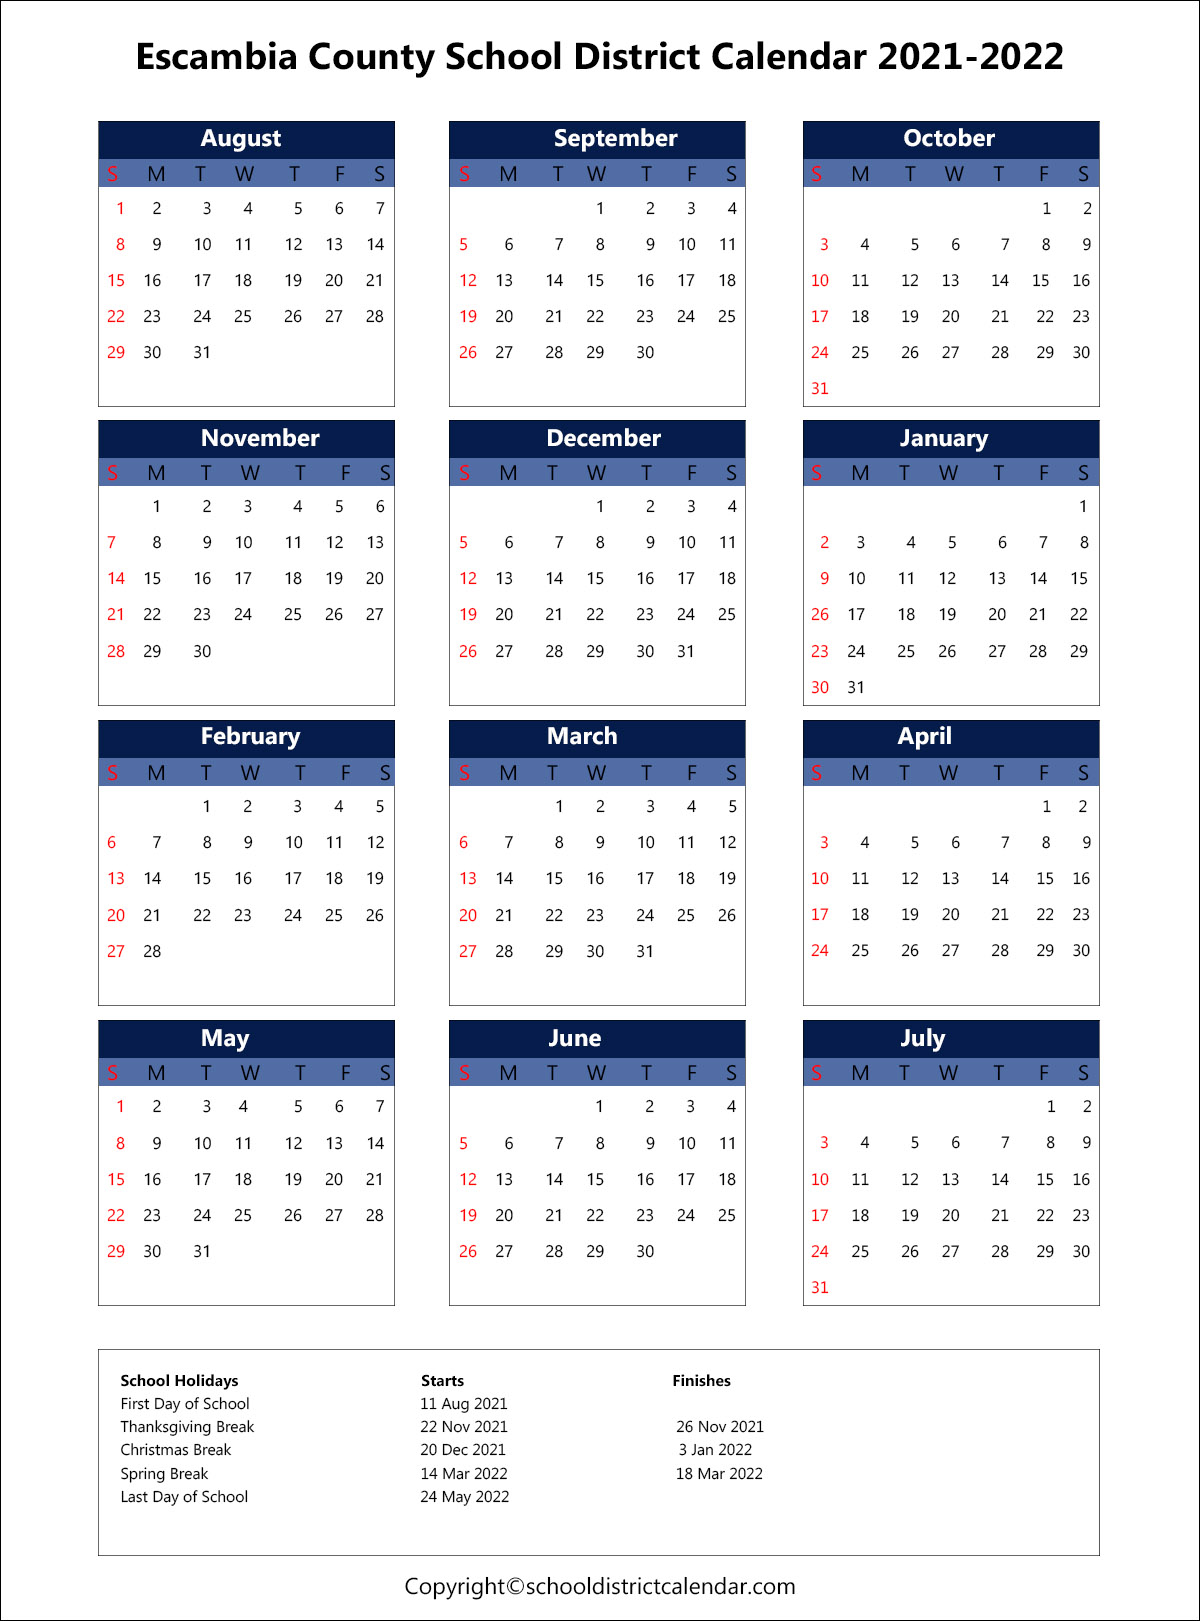 Escambia County School District Calendar 2021